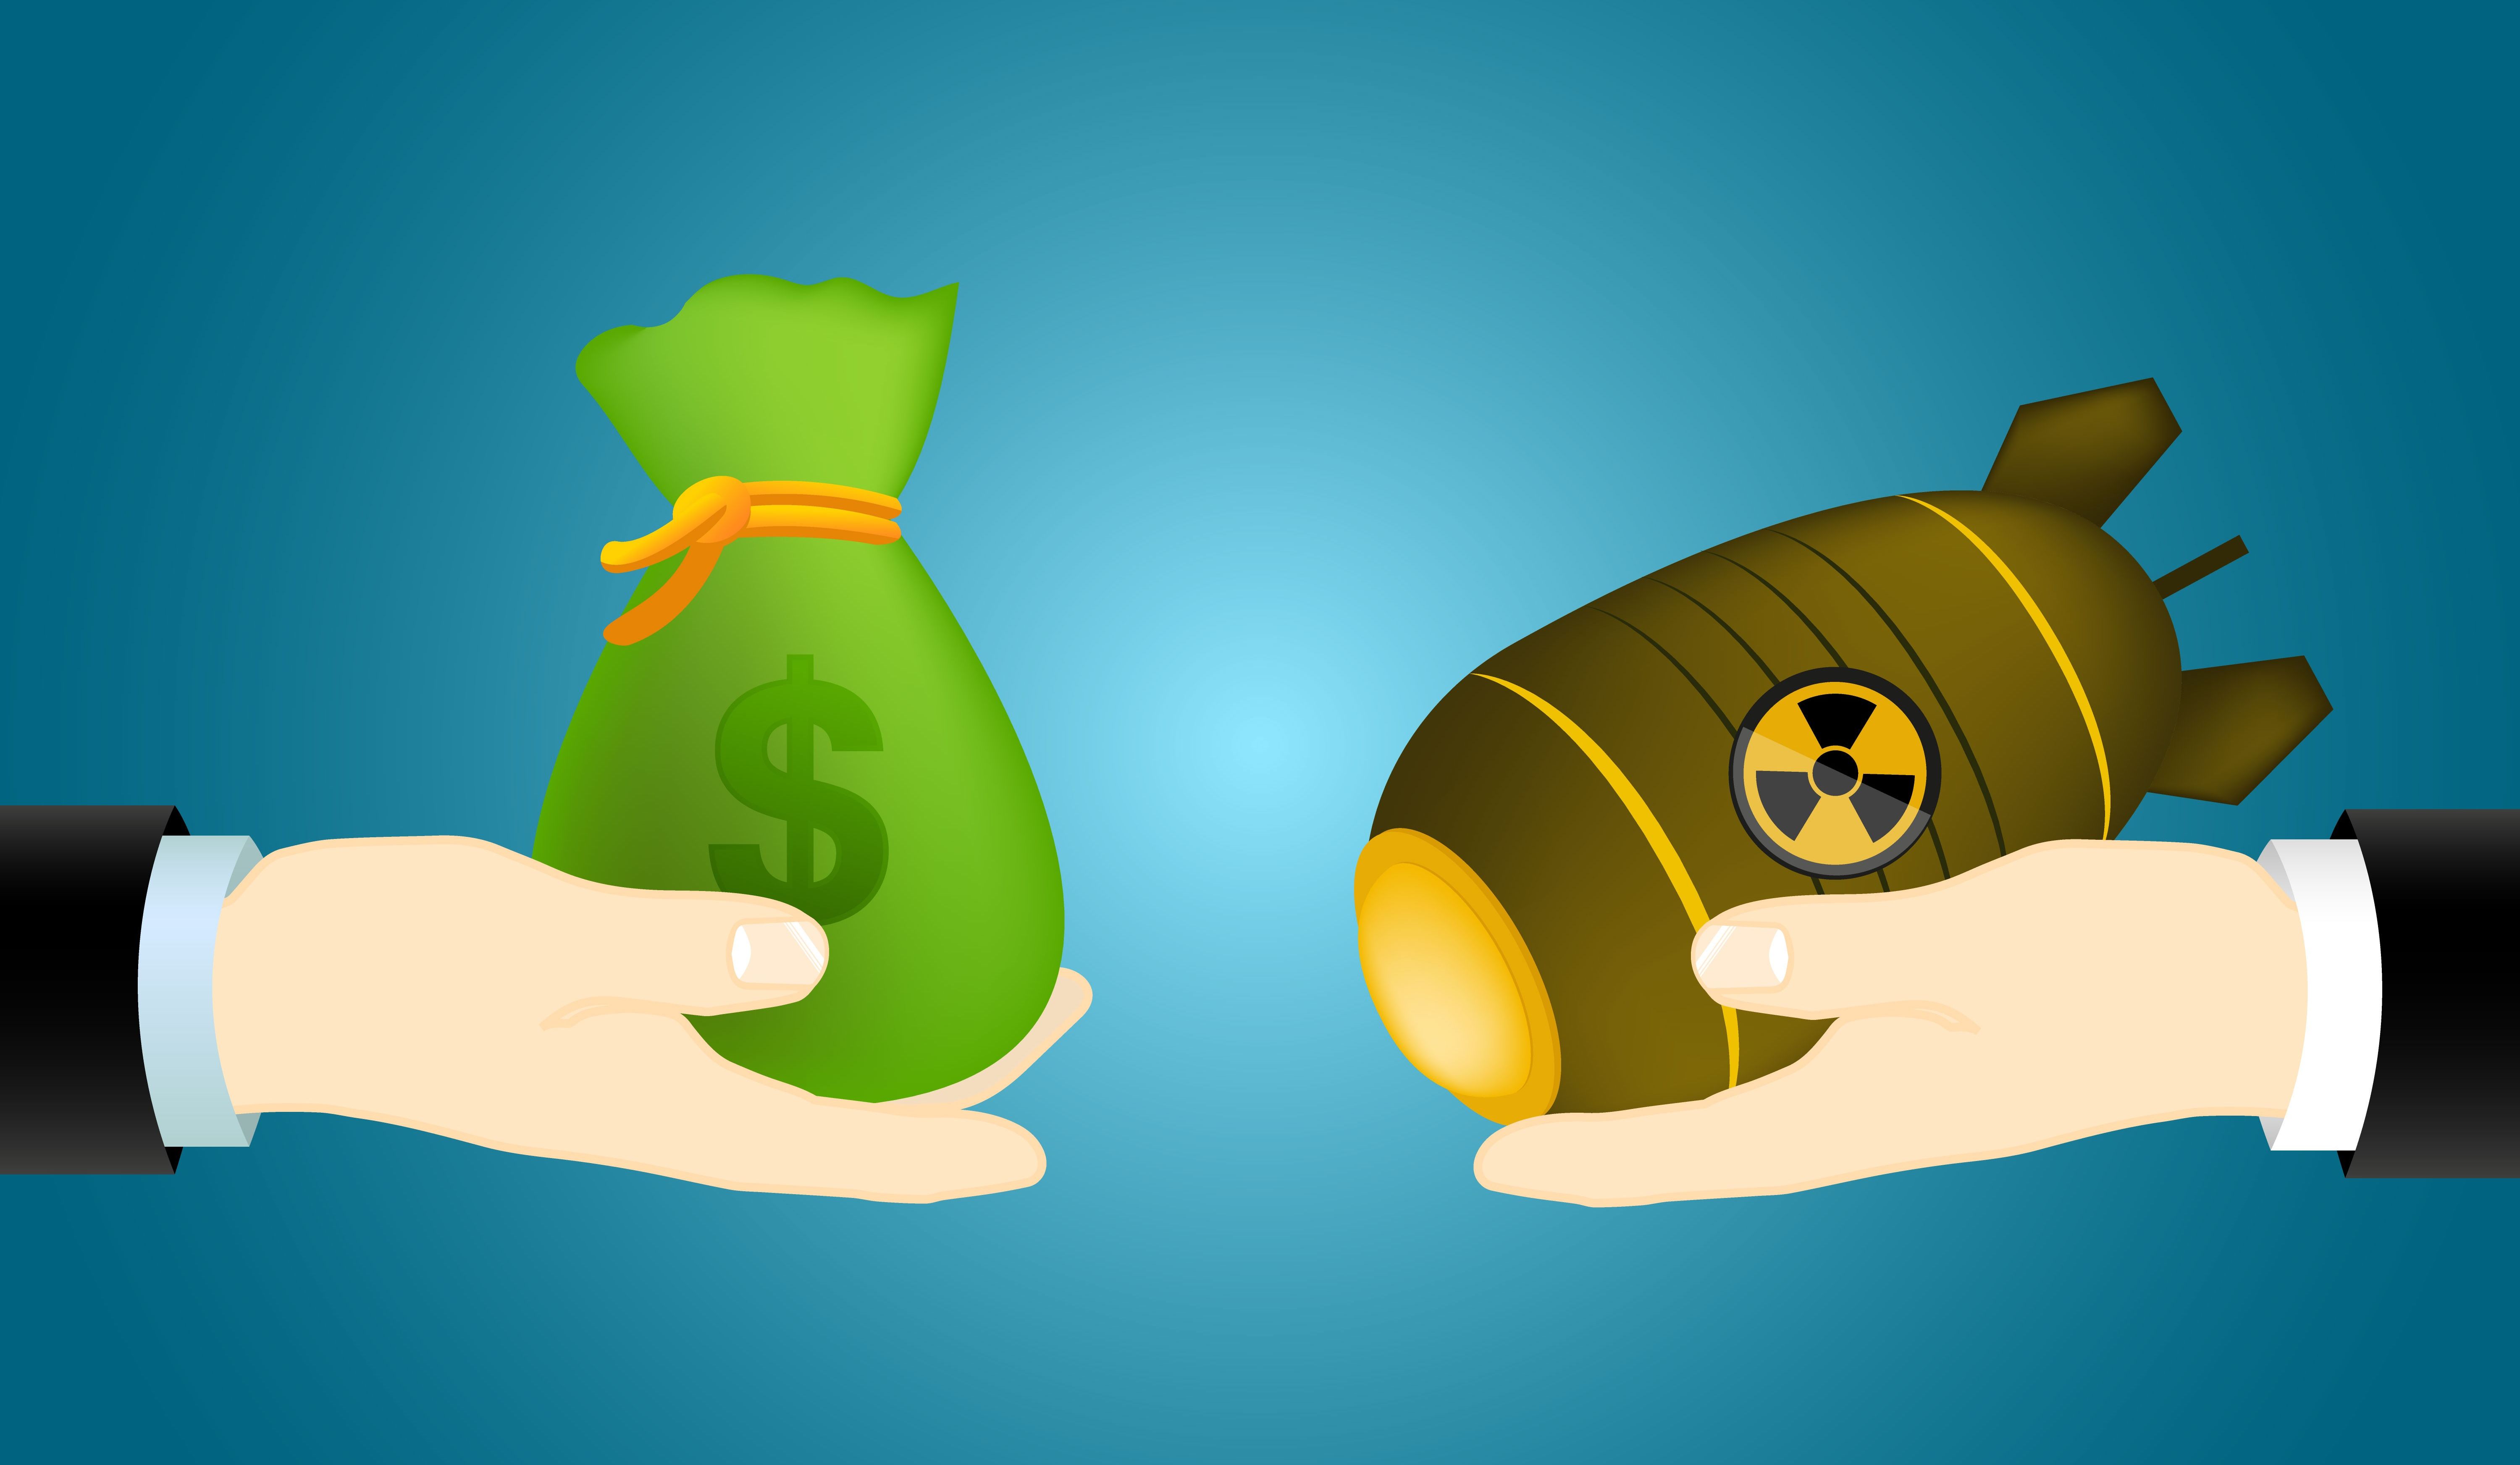 World spending on nukes explodes to more than $90 billion